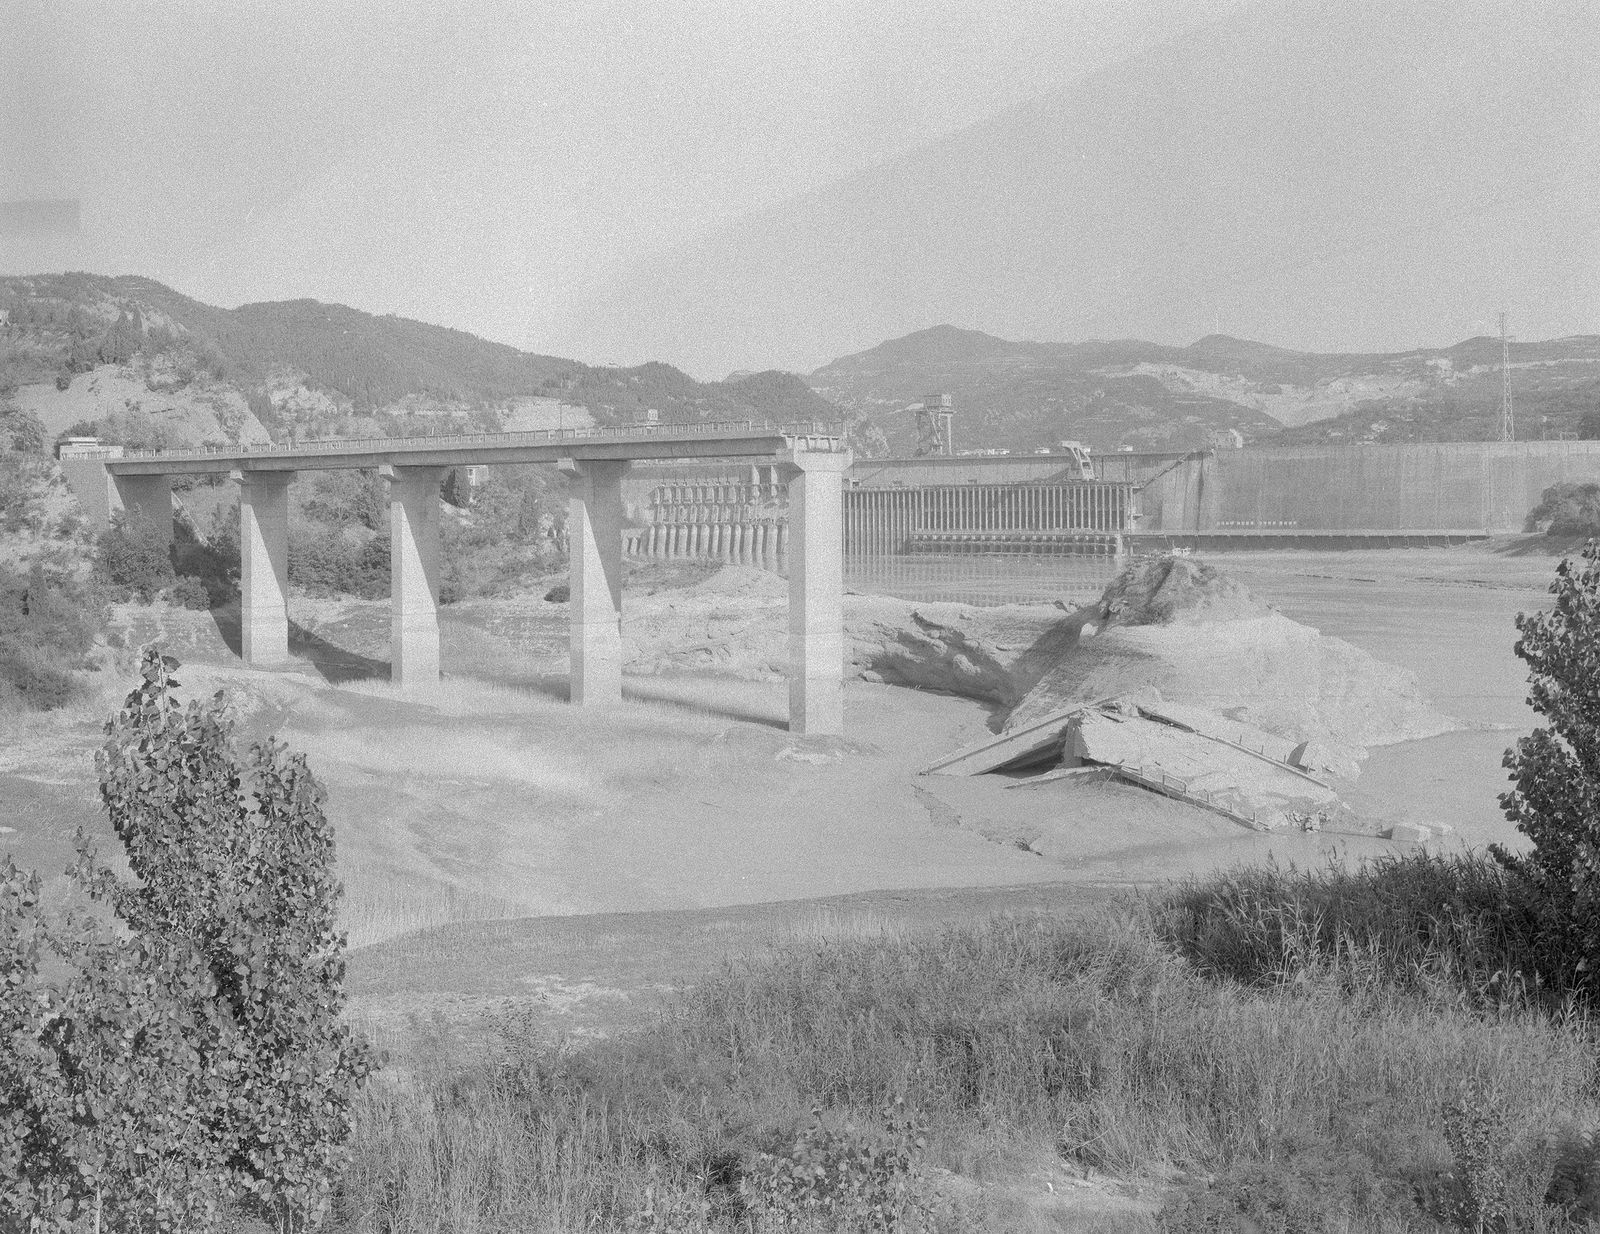 © Yexin Qiu & Moying Zhang - The broken bridge in front of the dam.